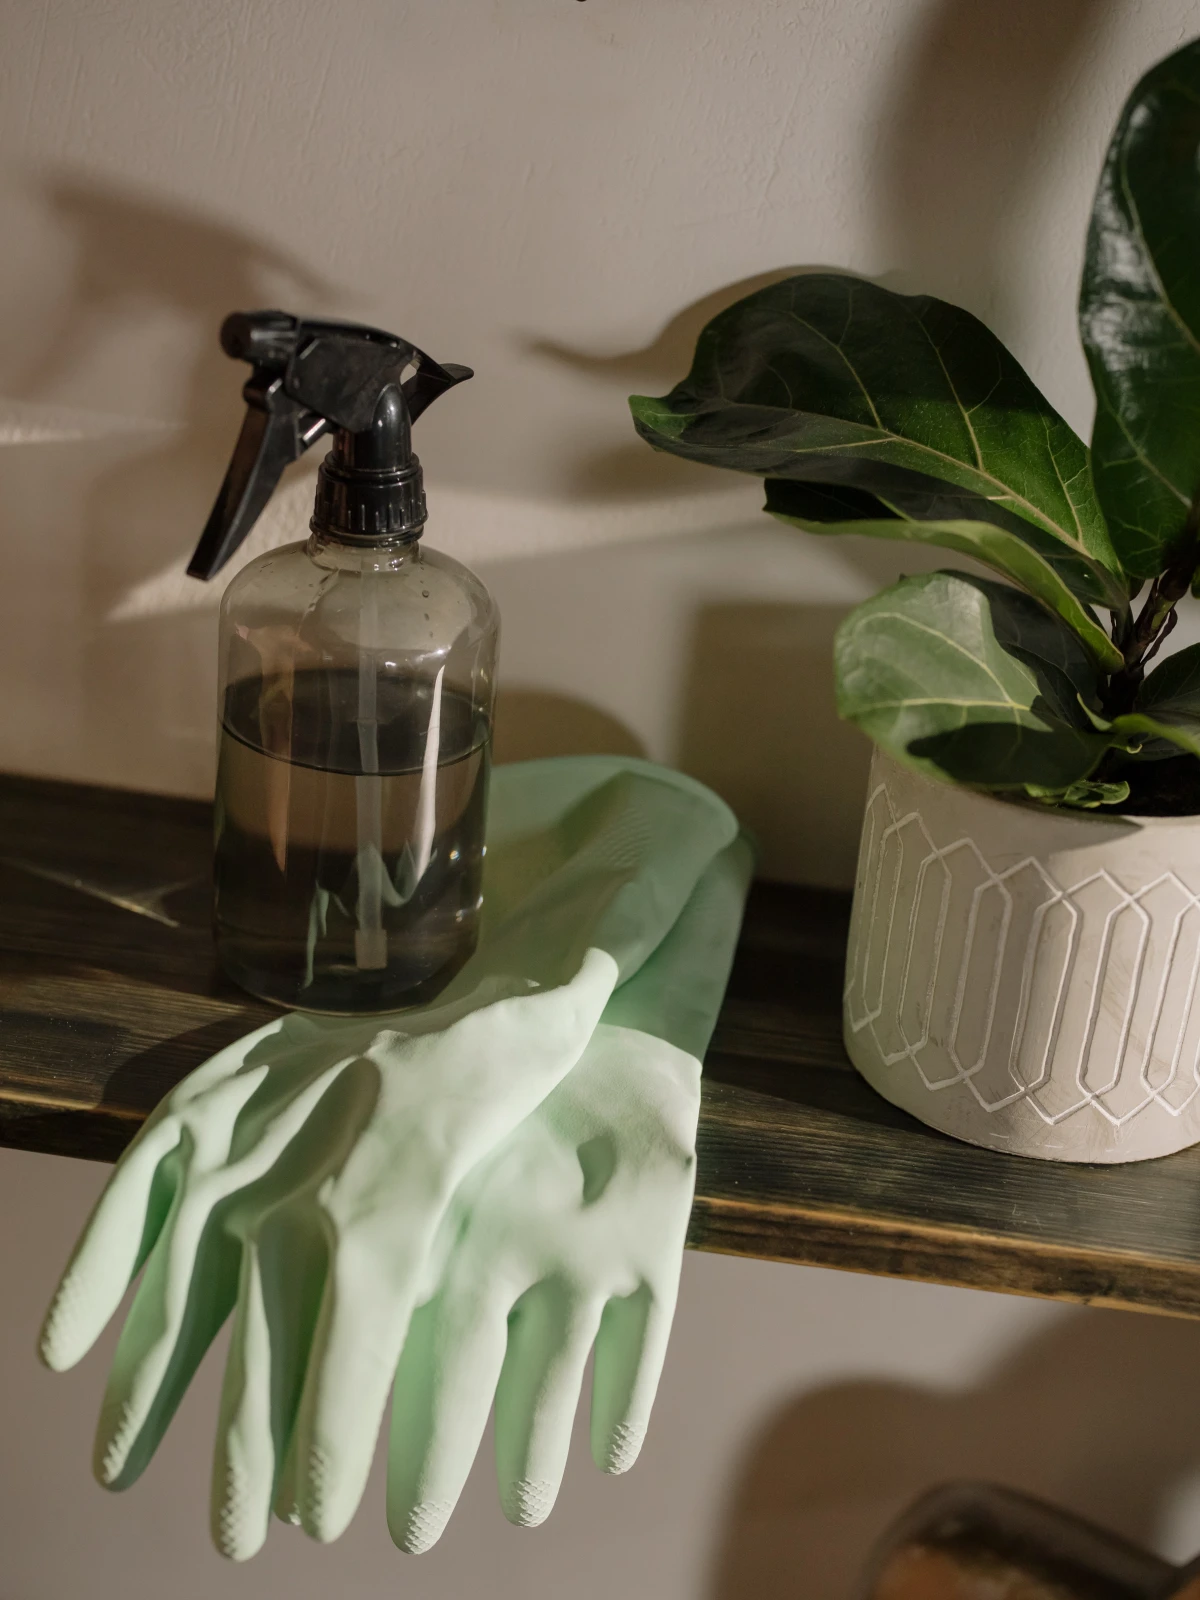 spray bottle and green gloves on shelf